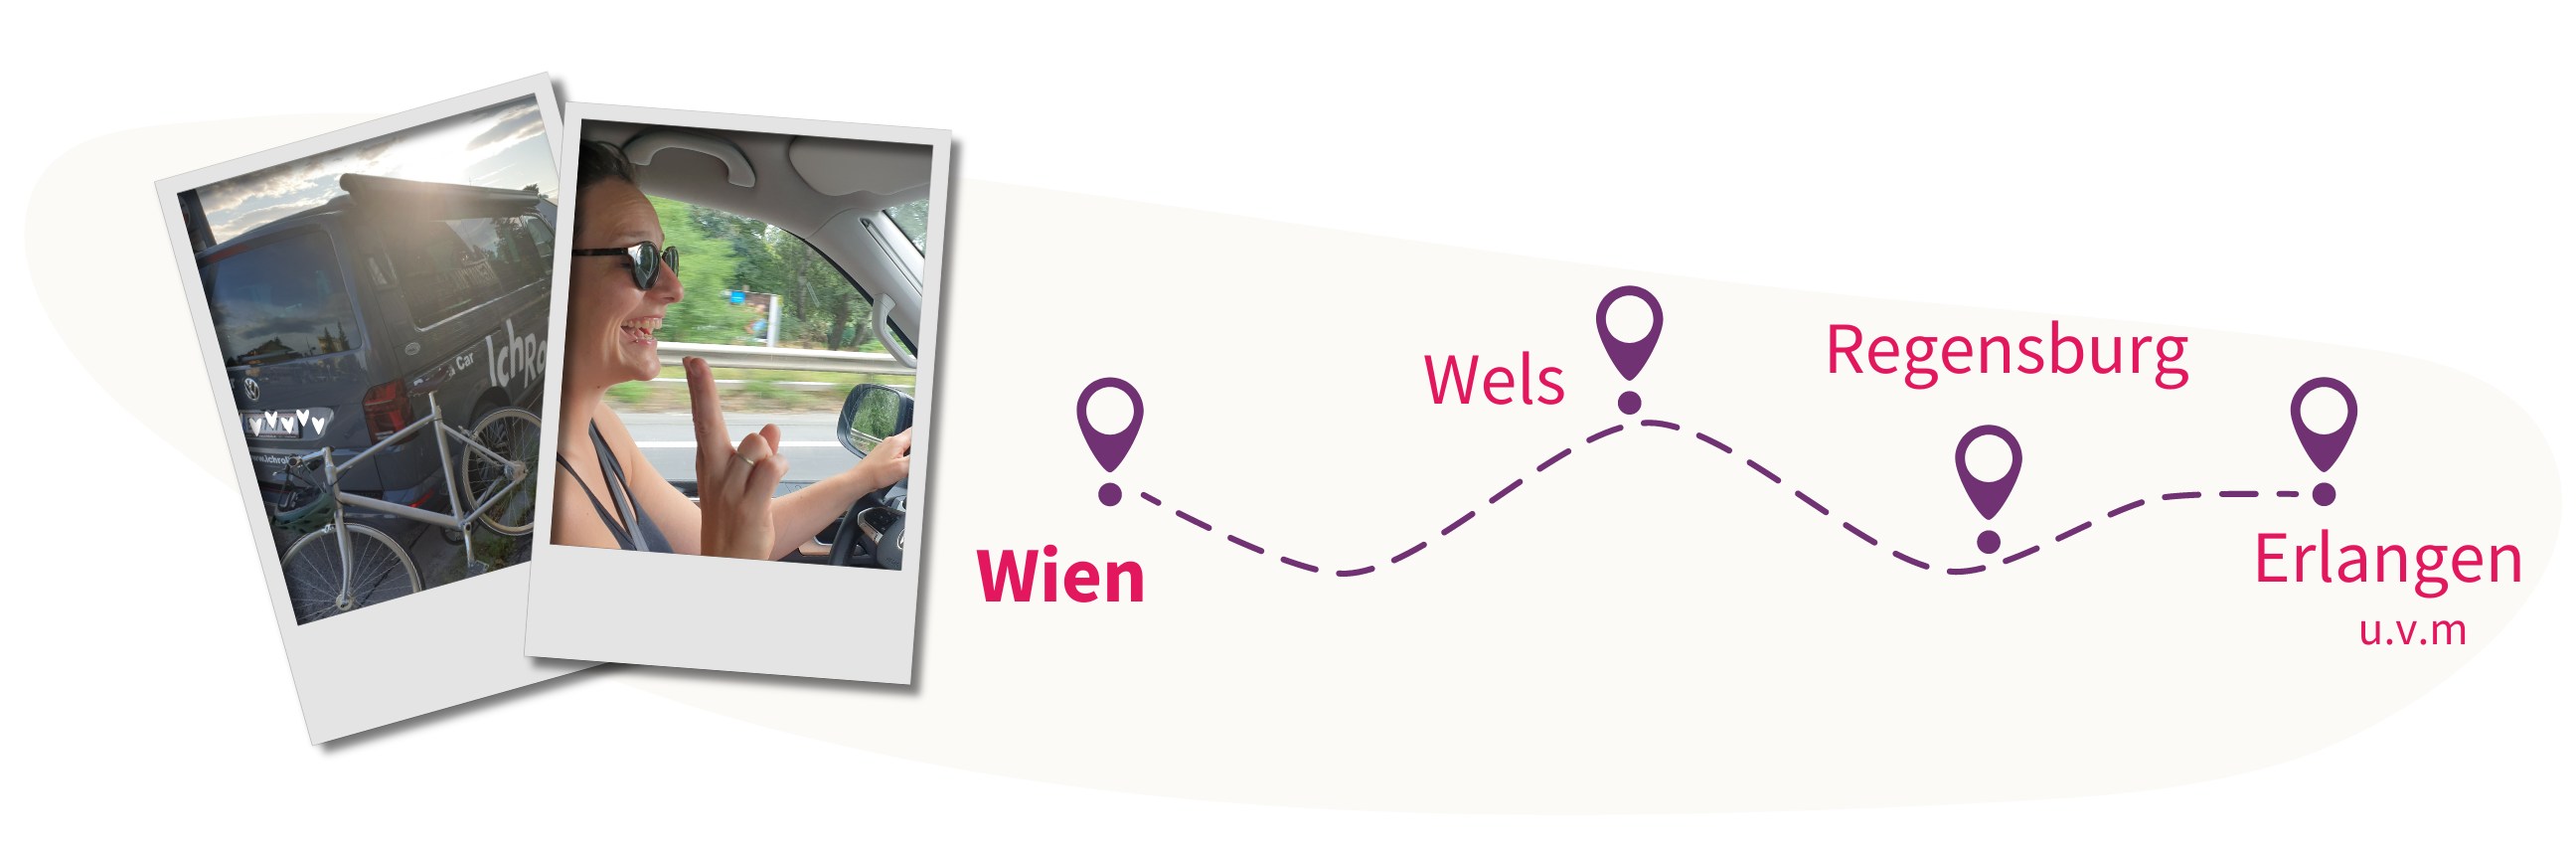 links zwei Polaroidfotos im Hochformat. Sie zeigen einen VW Bus und ein Rennrad und eine Frau die gerade ein Autp steuert aus der Perspektive des Beifahrers. Rechts die strichlierte Skizze einer Reiseroute in lina, deren Zwischenstationen in pink mit Wien, Wels, Regensburg, Erlangen u.v.m. betitelt sind.